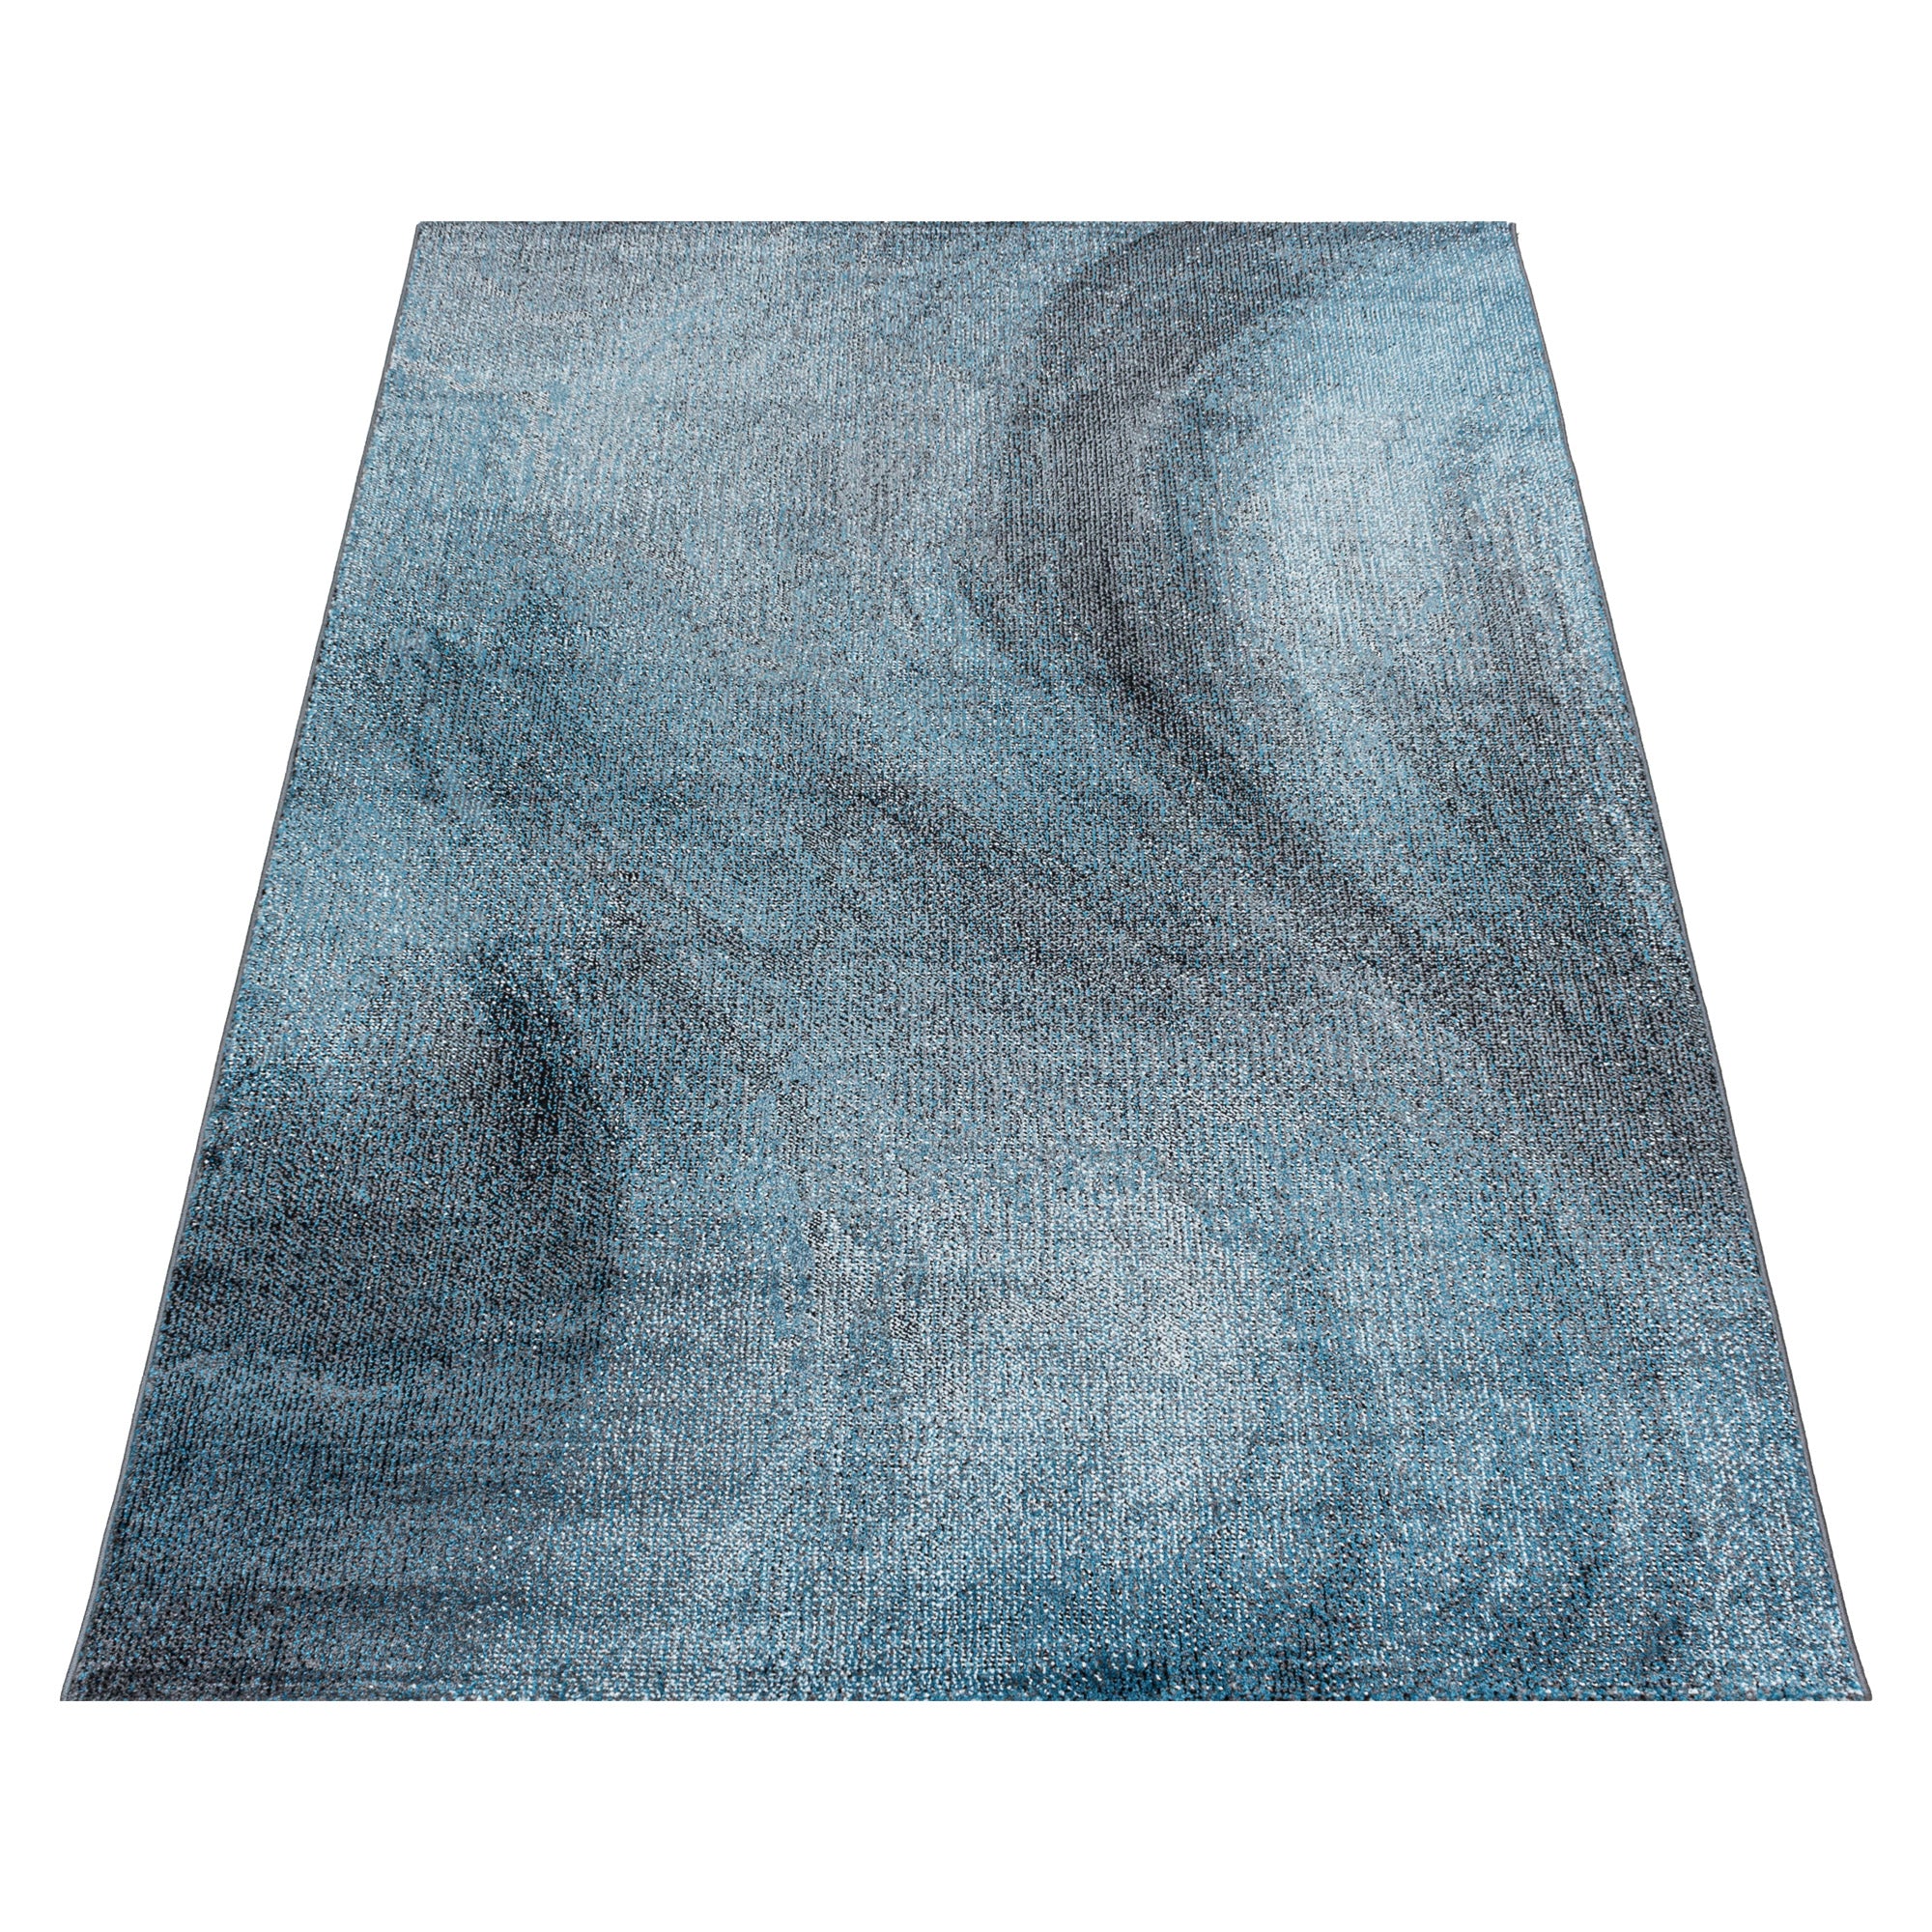 Kurzflor Teppich Blau Grau Muster Verwischt Marmoriert Wohnzimmerteppich Weich